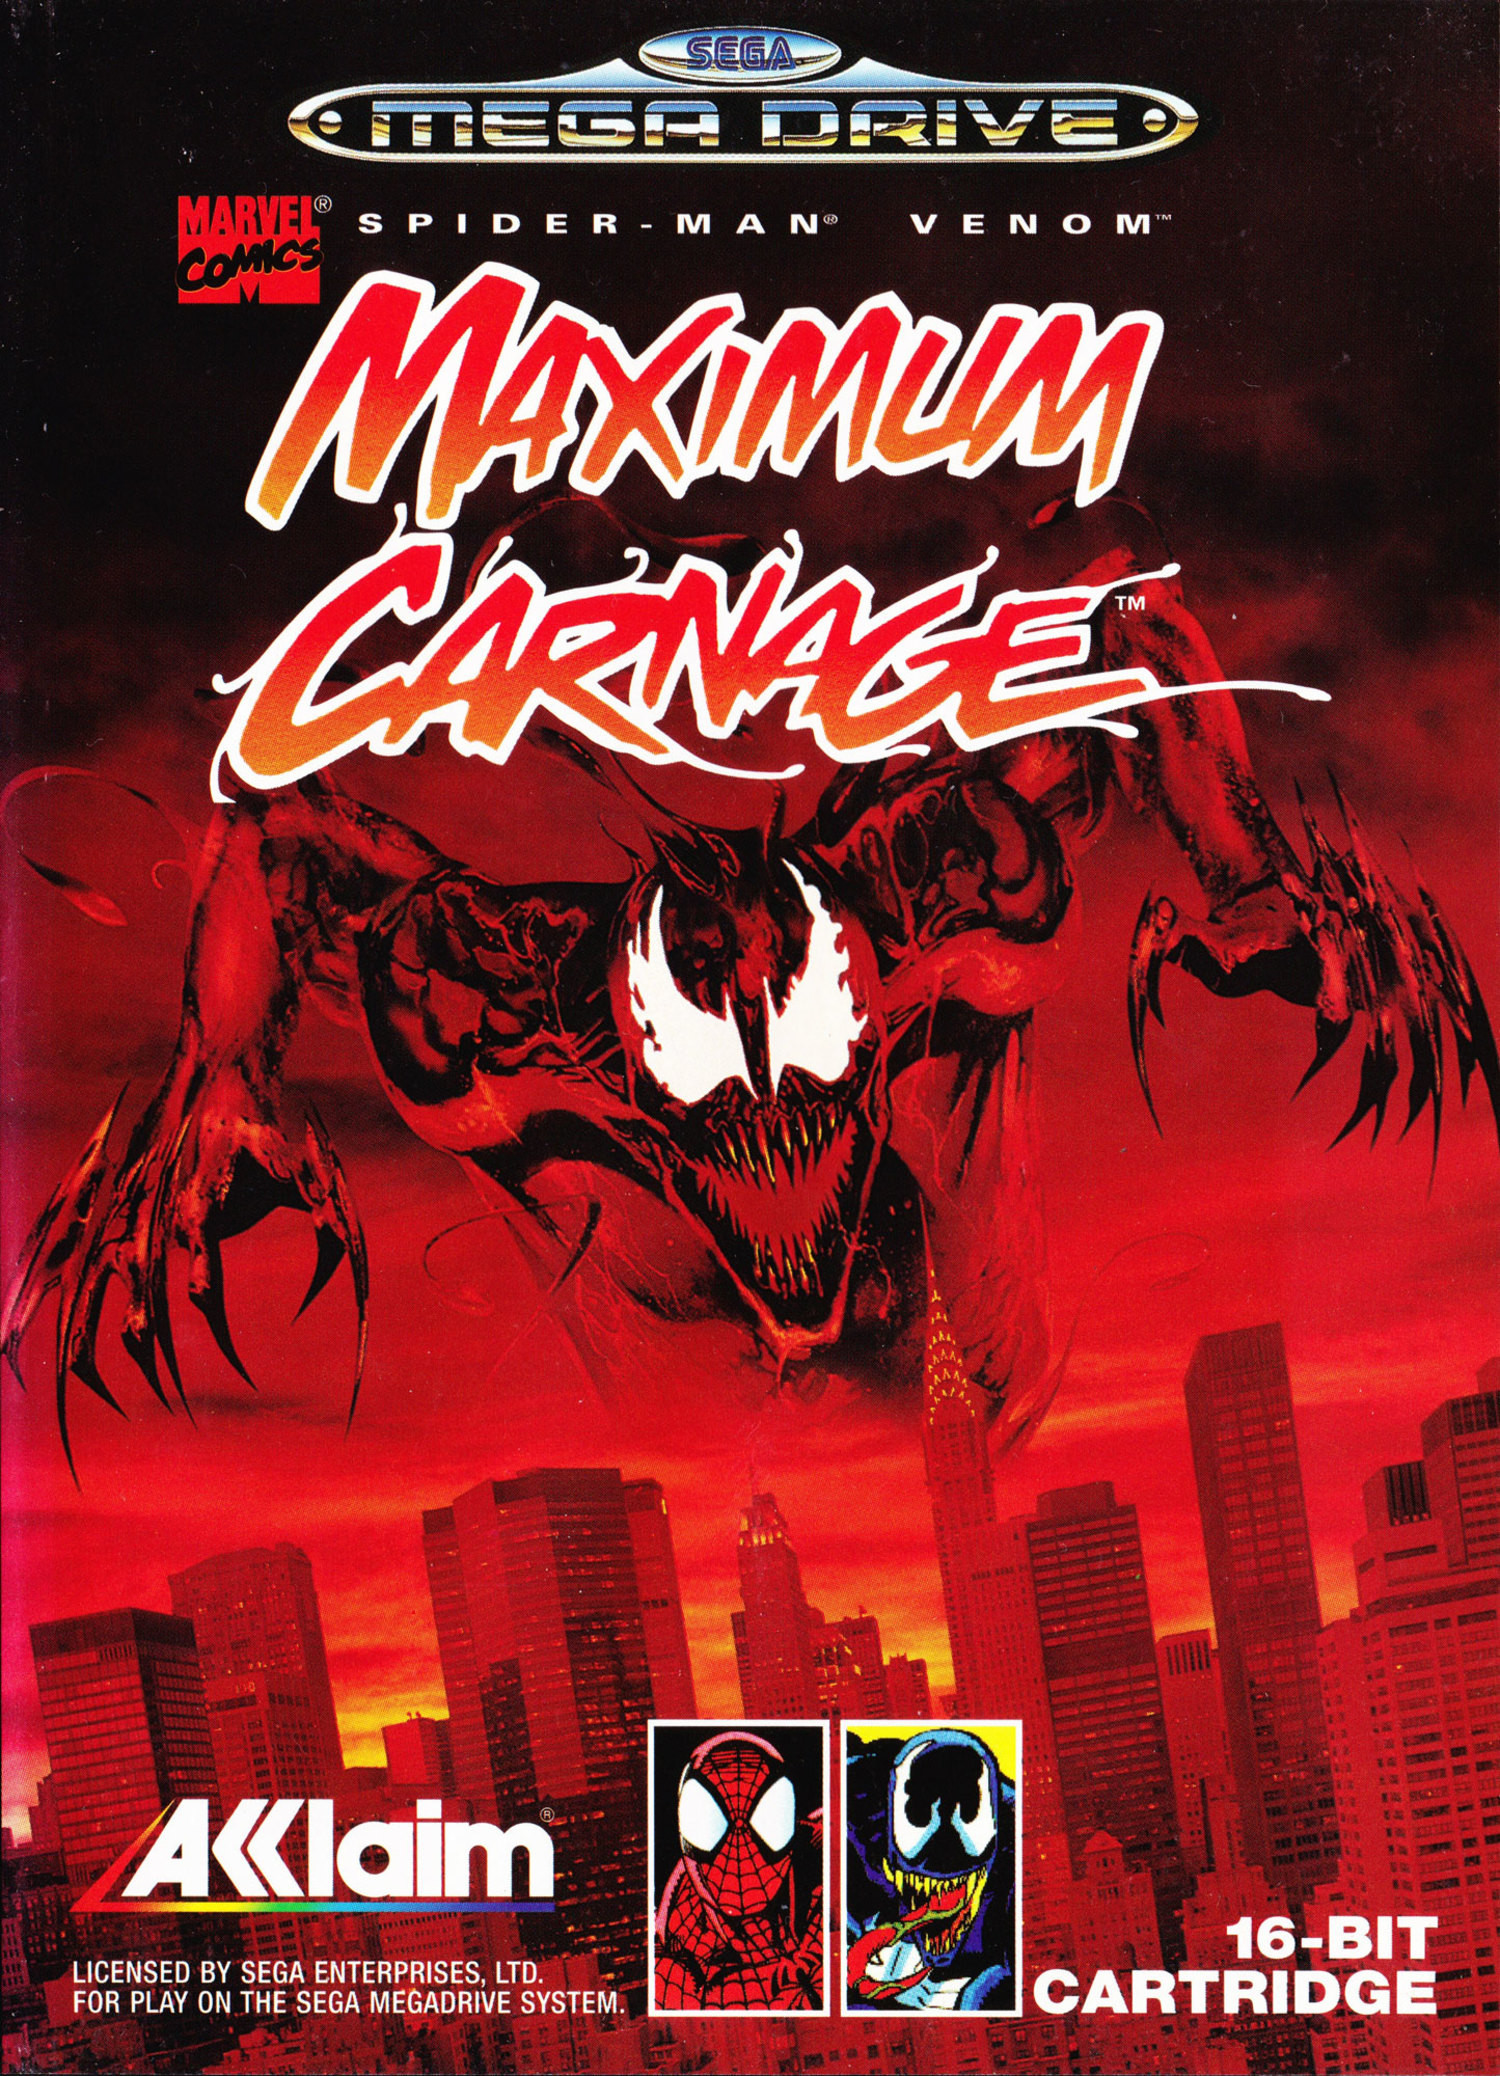 Spider-Man And Venom - Maximum Carnage